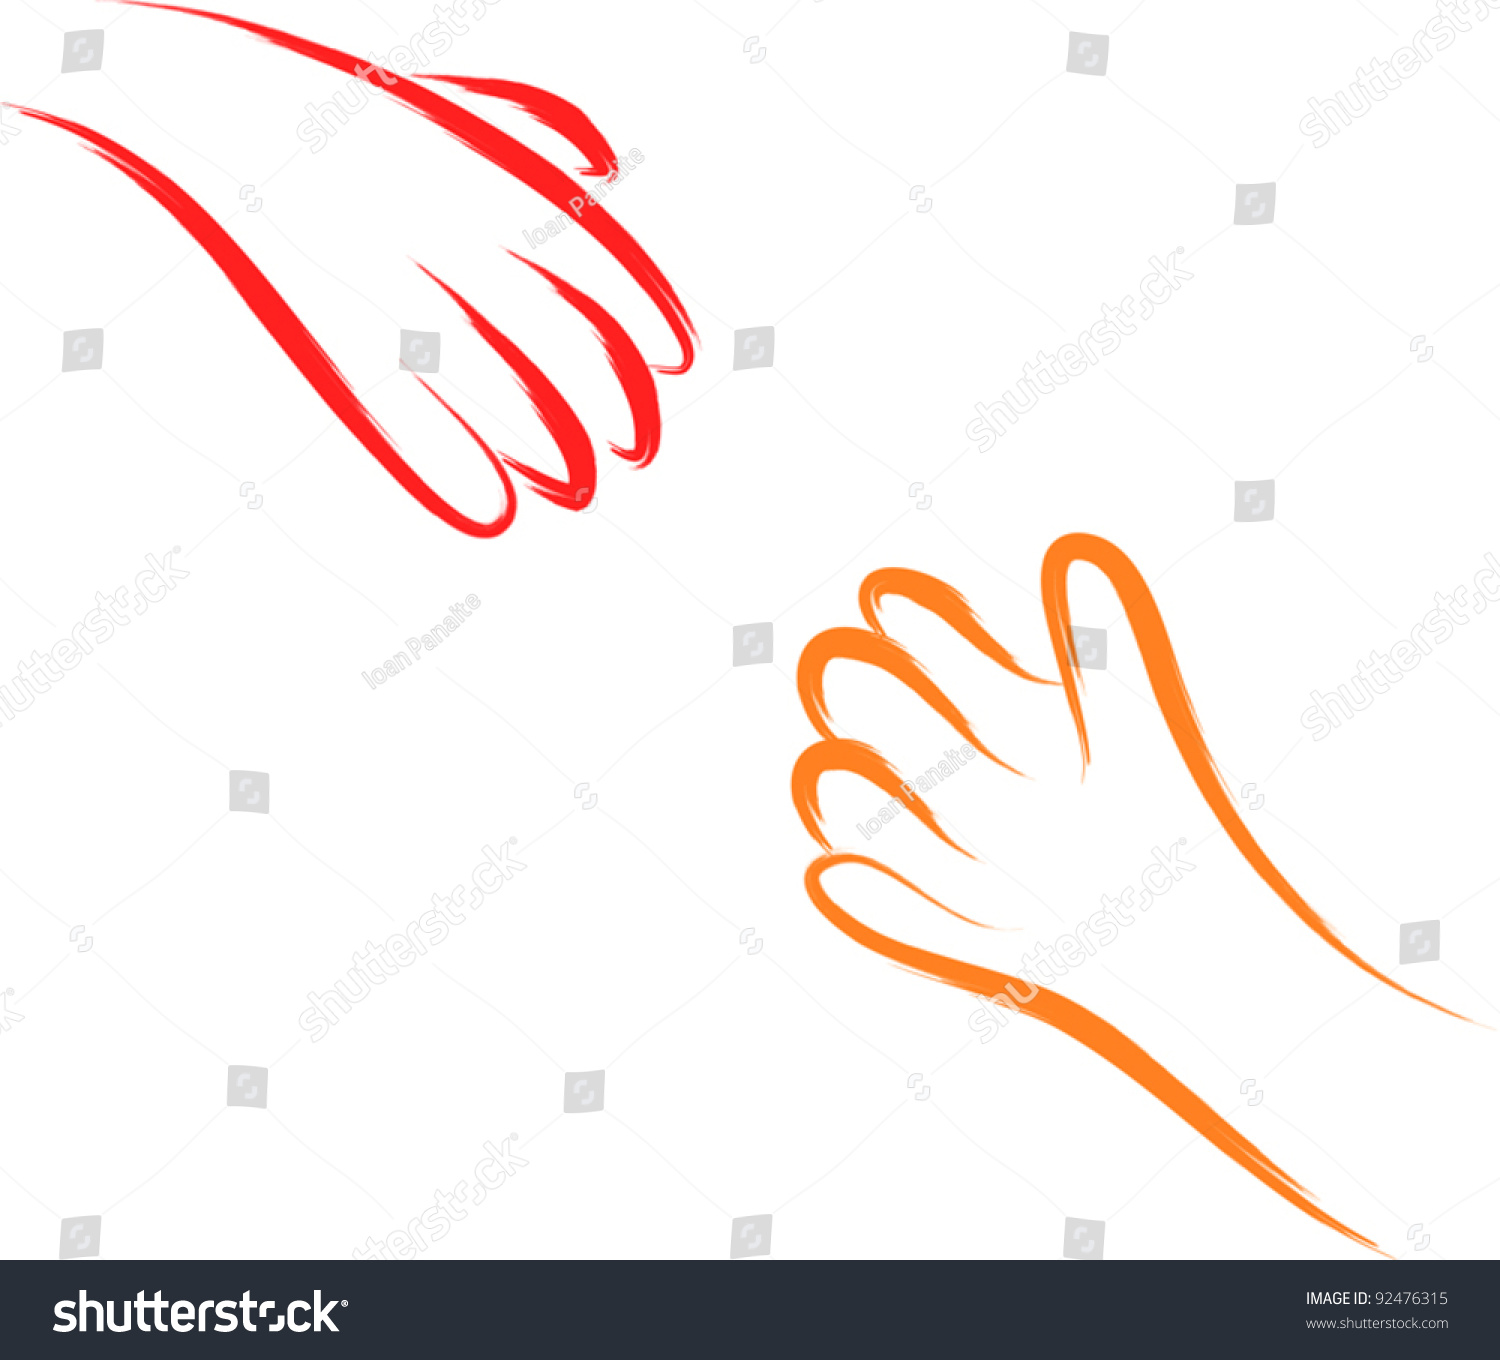 Helping Hands Sketch Stock Vector 92476315 - Shutterstock